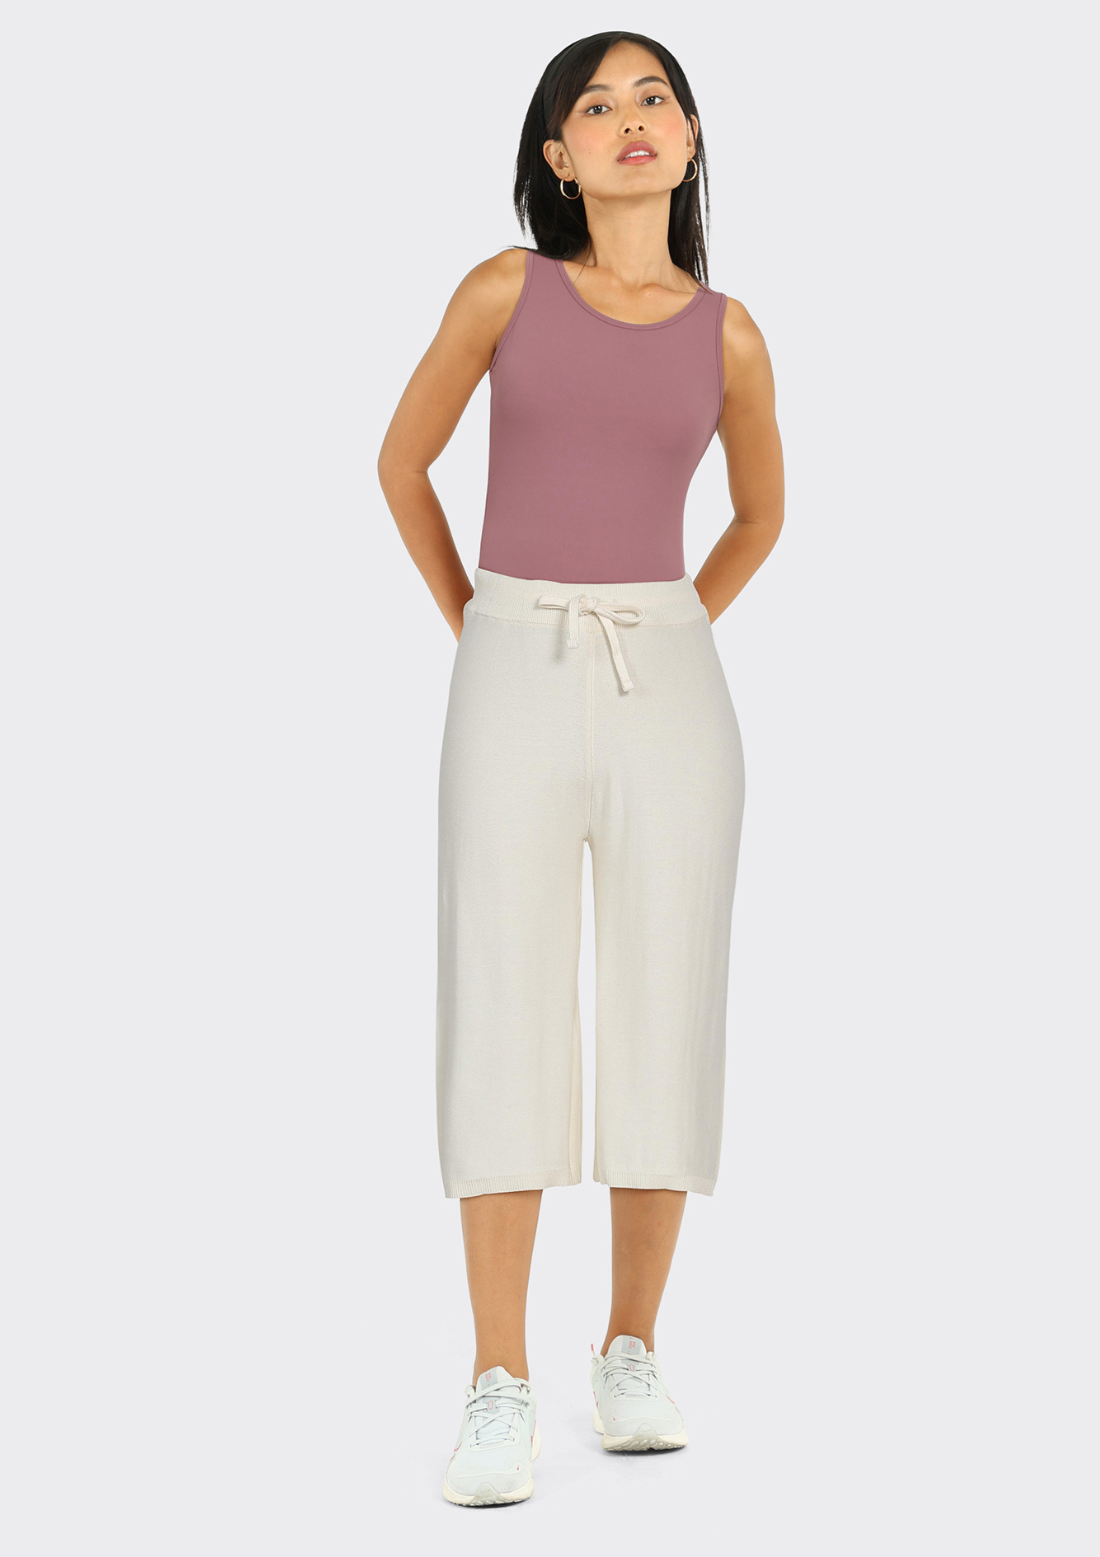 Buy Plus Size Wide Leg Pants for Women Online from Blissclub